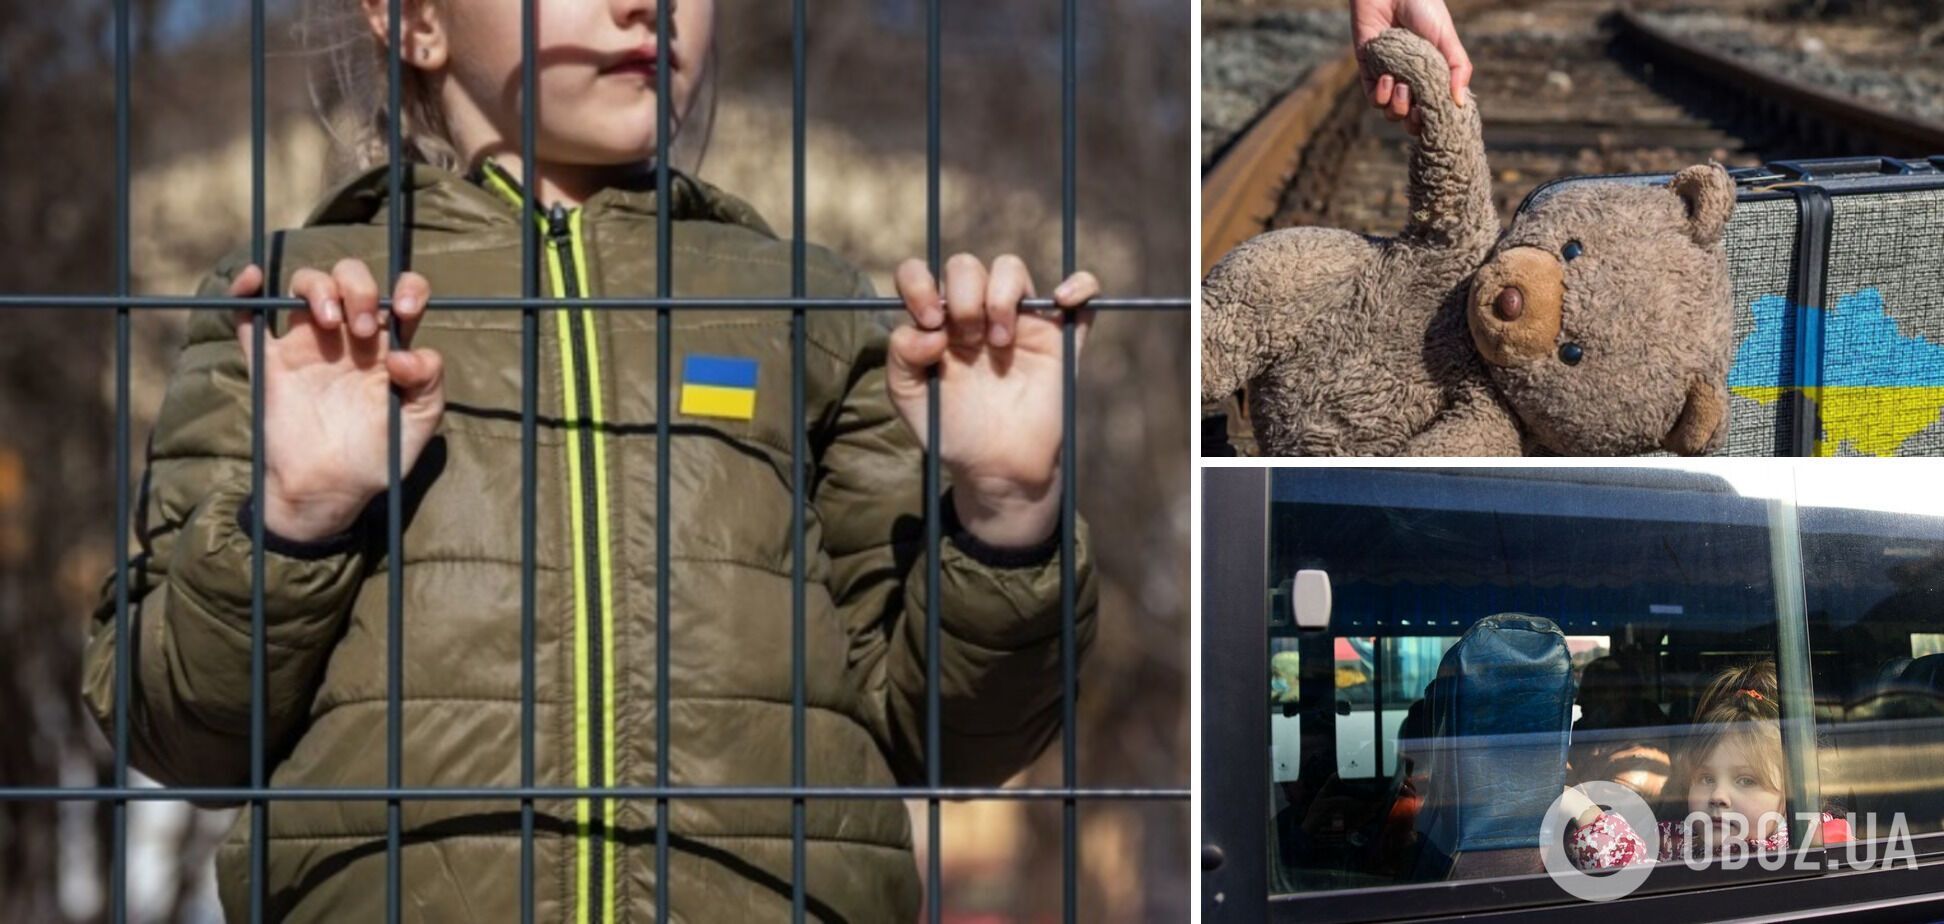 Канада и Украина возглавят коалицию стран по возвращению депортированных Россией детей: что известно